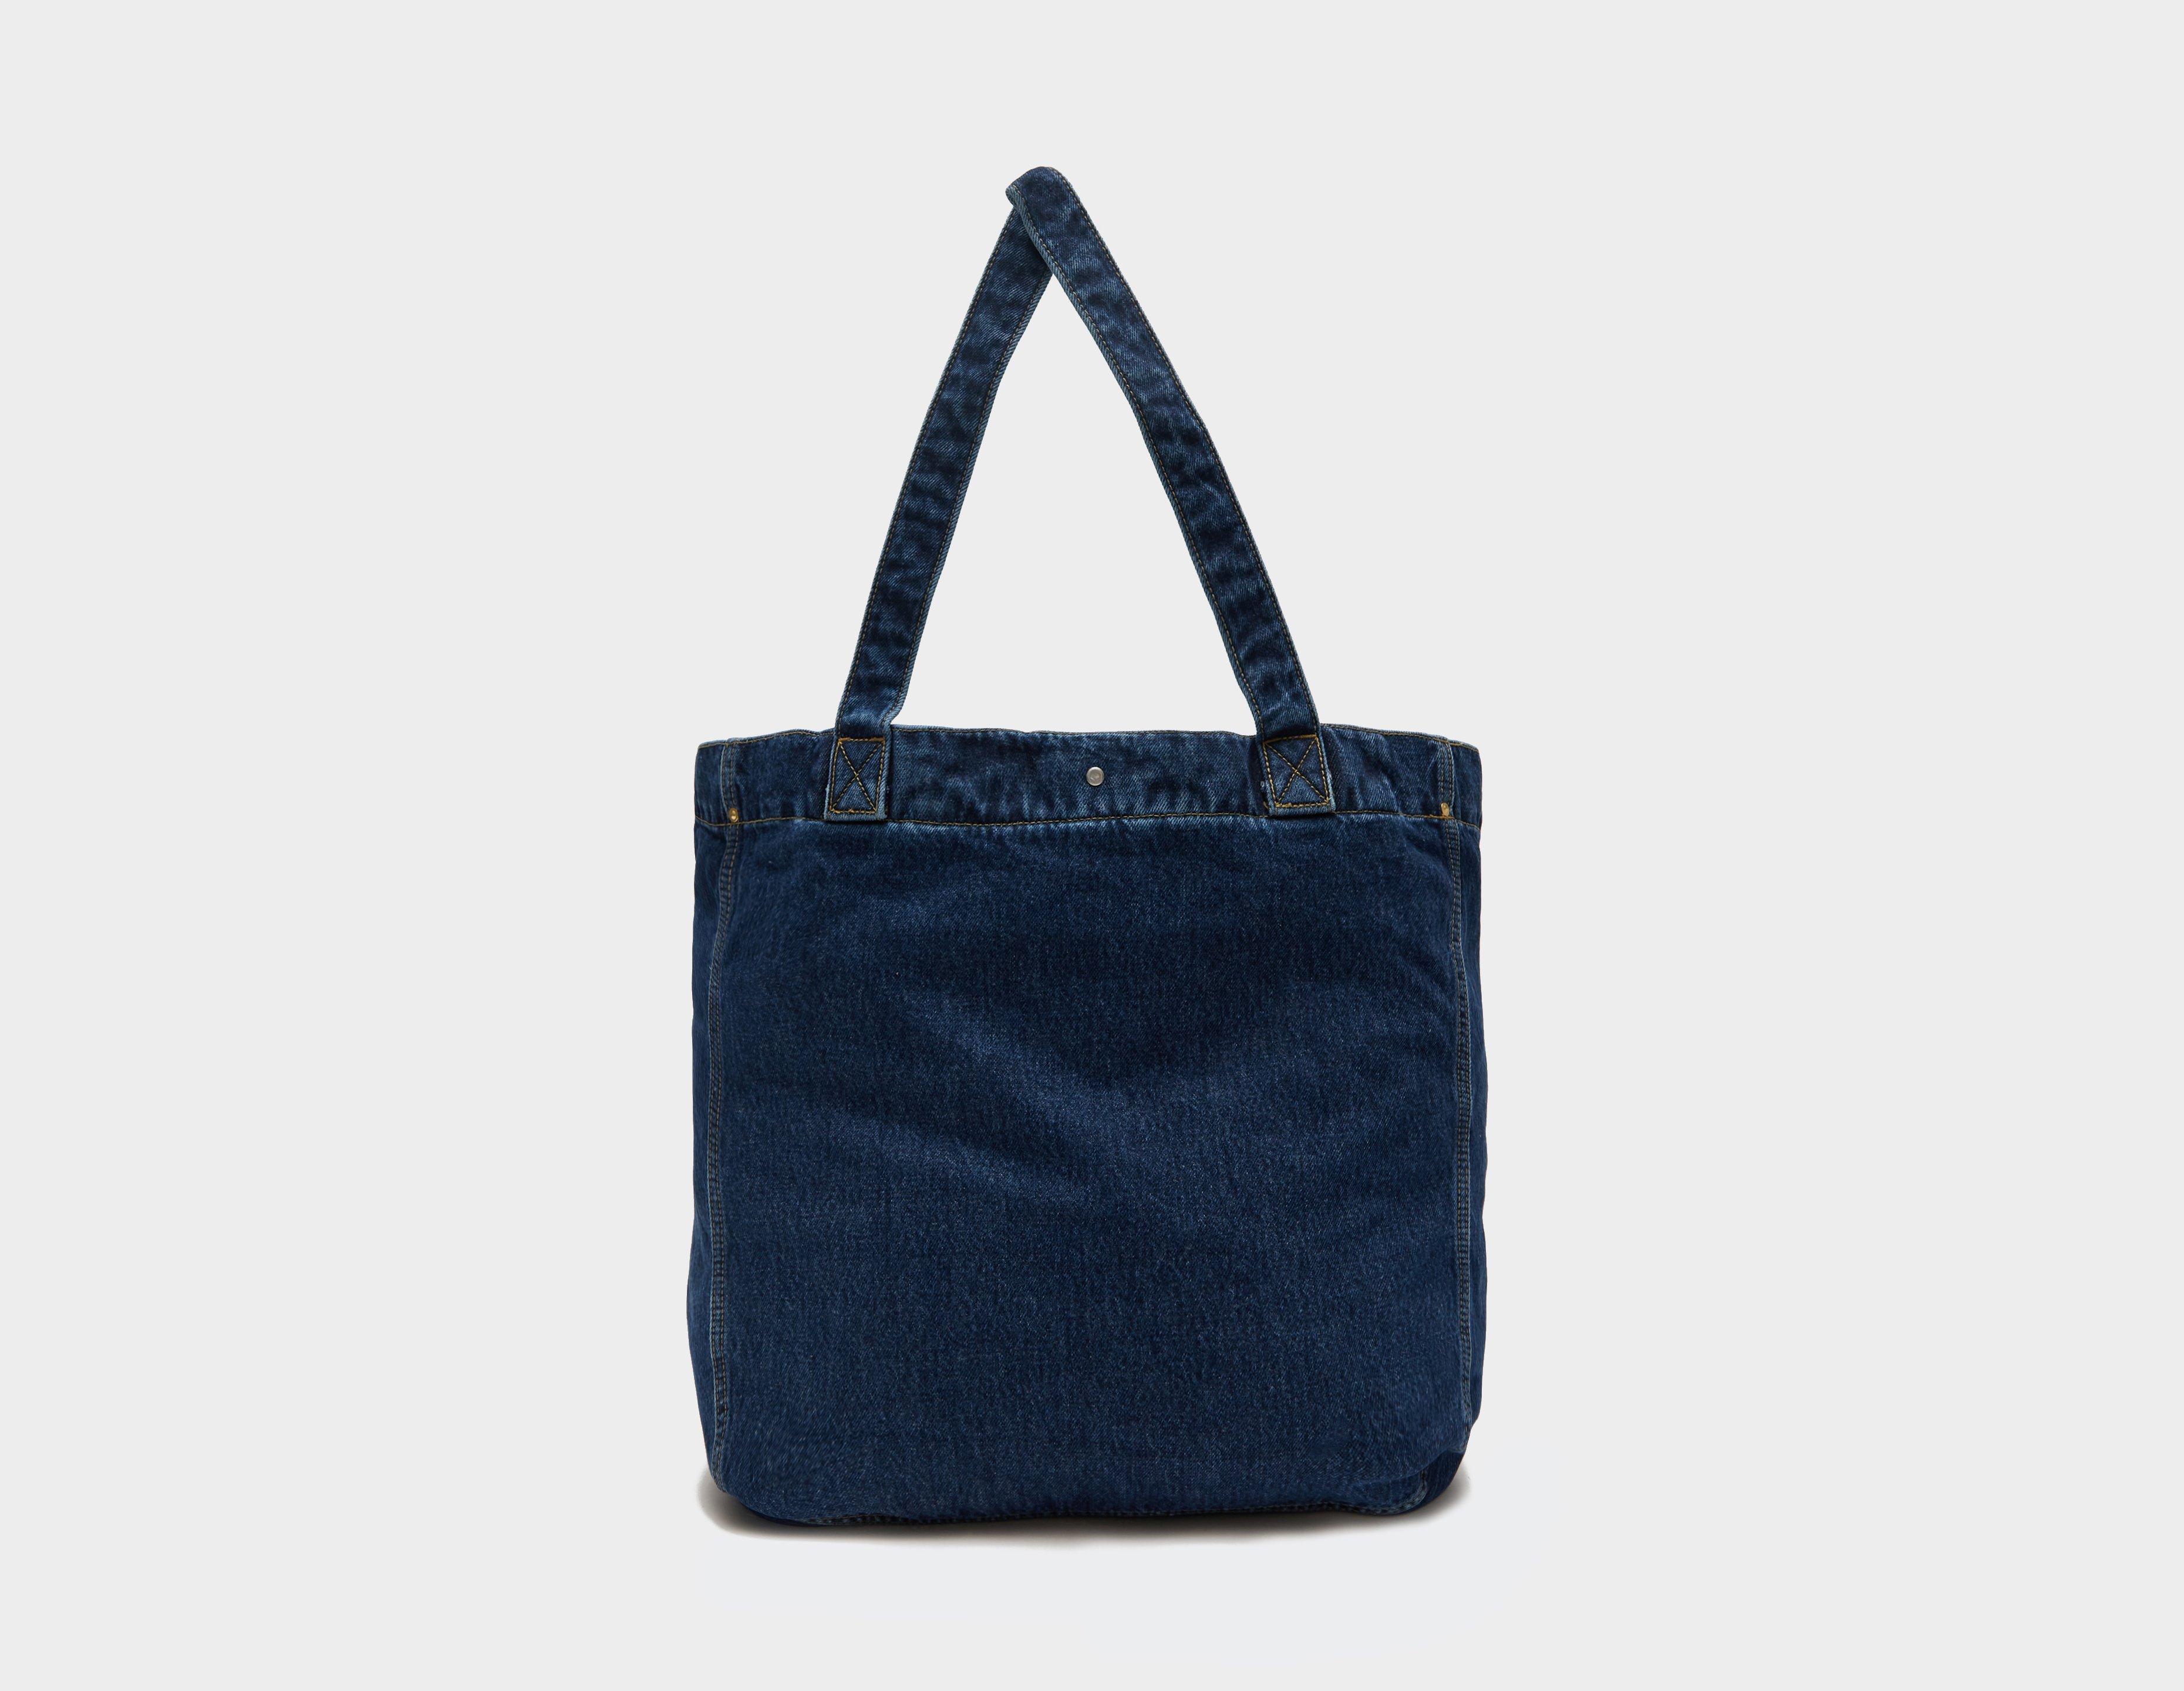 Marc Jacobs Bag strap, IetpShops, Women's Bags